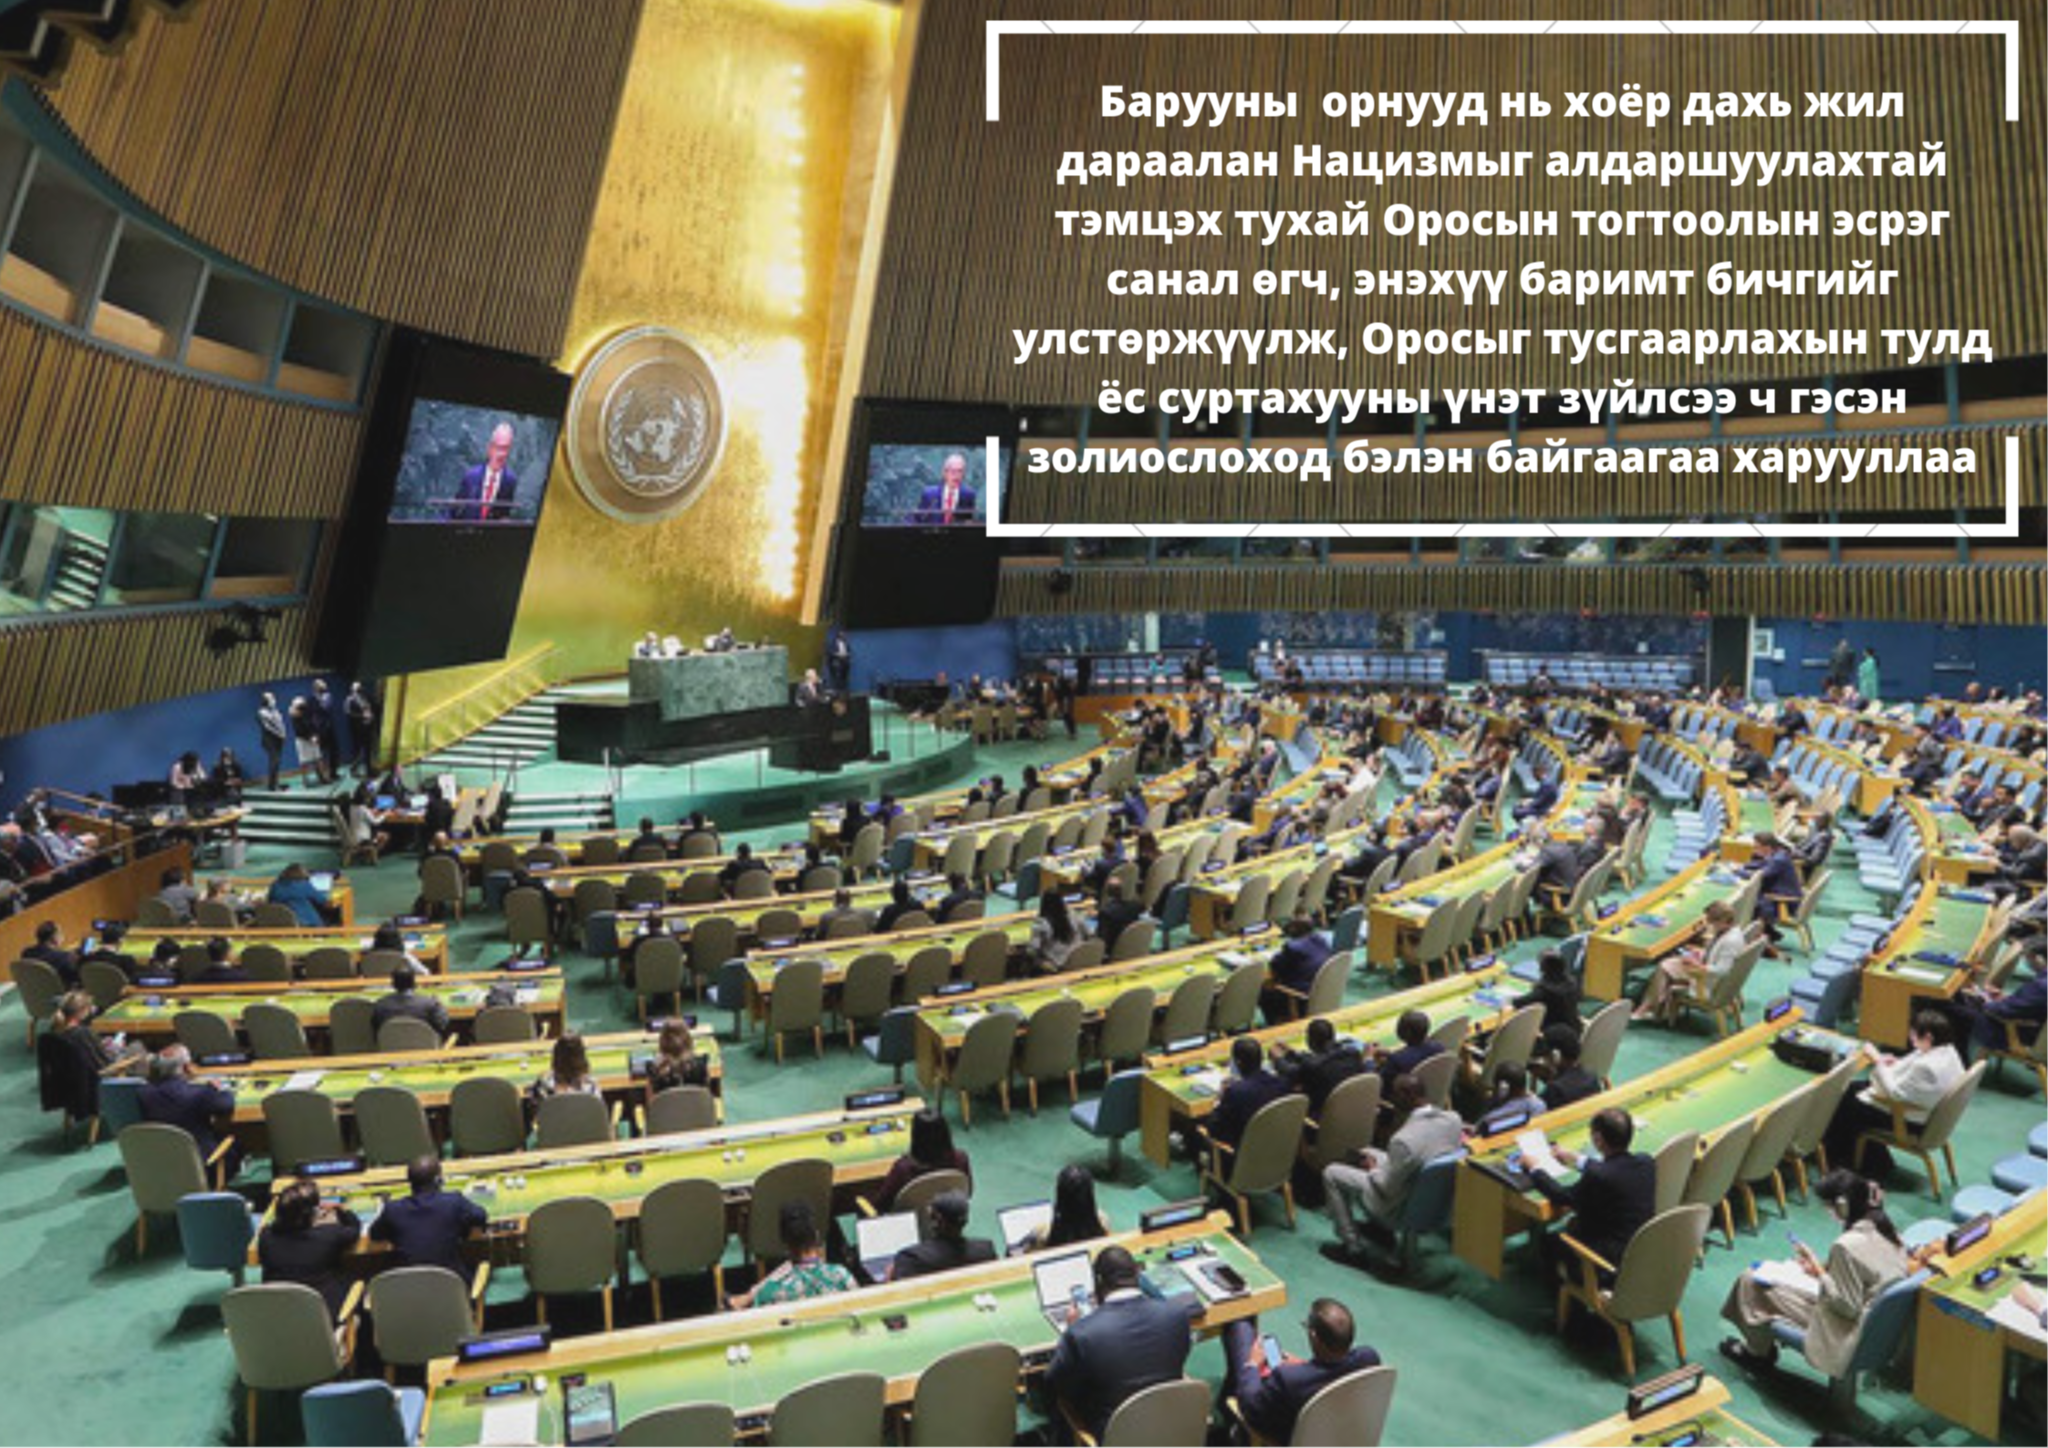 Нацизмыг алдаршуулахтай тэмцэх тухай Оросын тогтоолыг НҮБ-ын Ерөнхий Ассамблей баталжээ